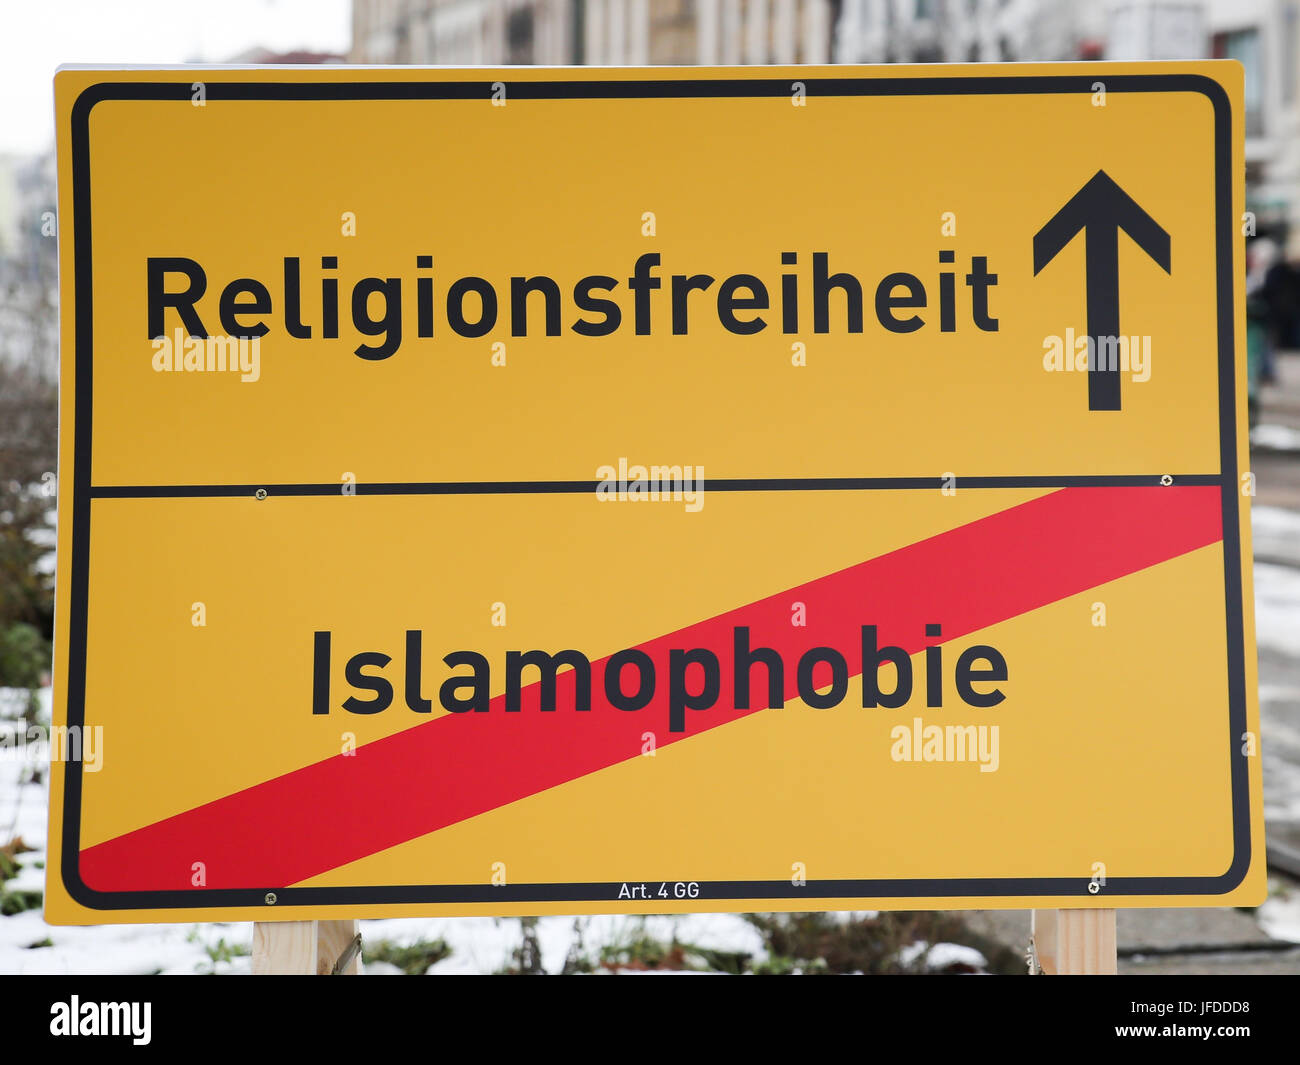 Religionsfreiheit - Islamophobie Stockfoto